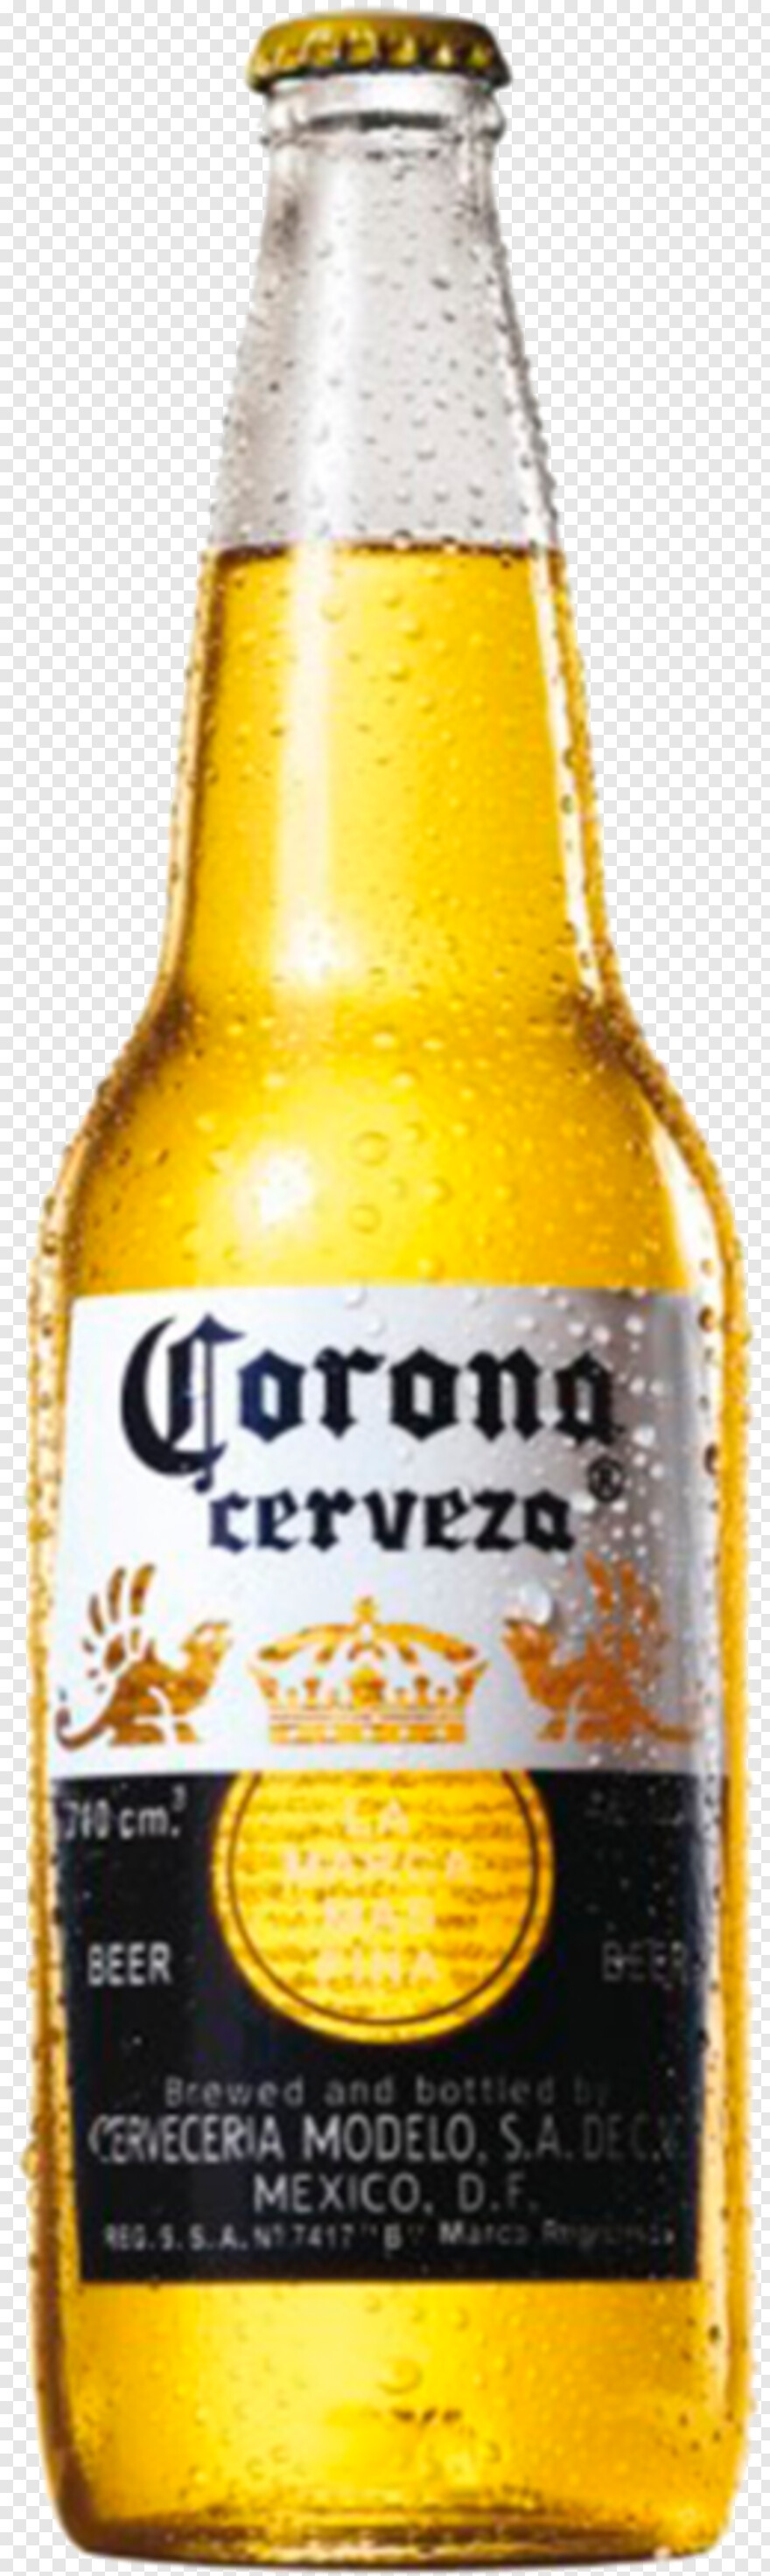 corona-beer # 380838